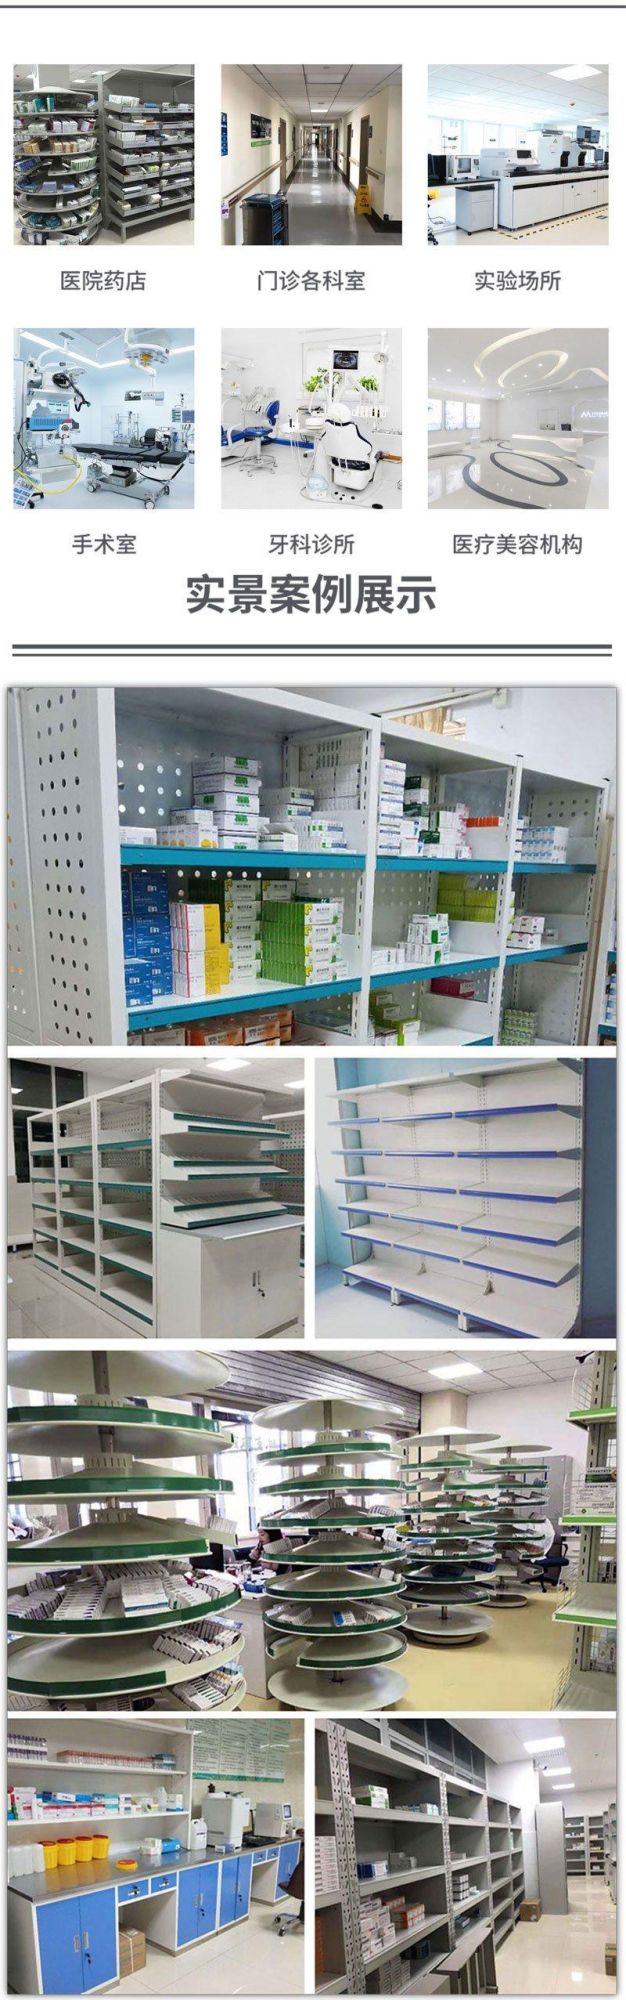 Modern Design Type Steel Pharmacy Shelving Racks with Drawer Shelving